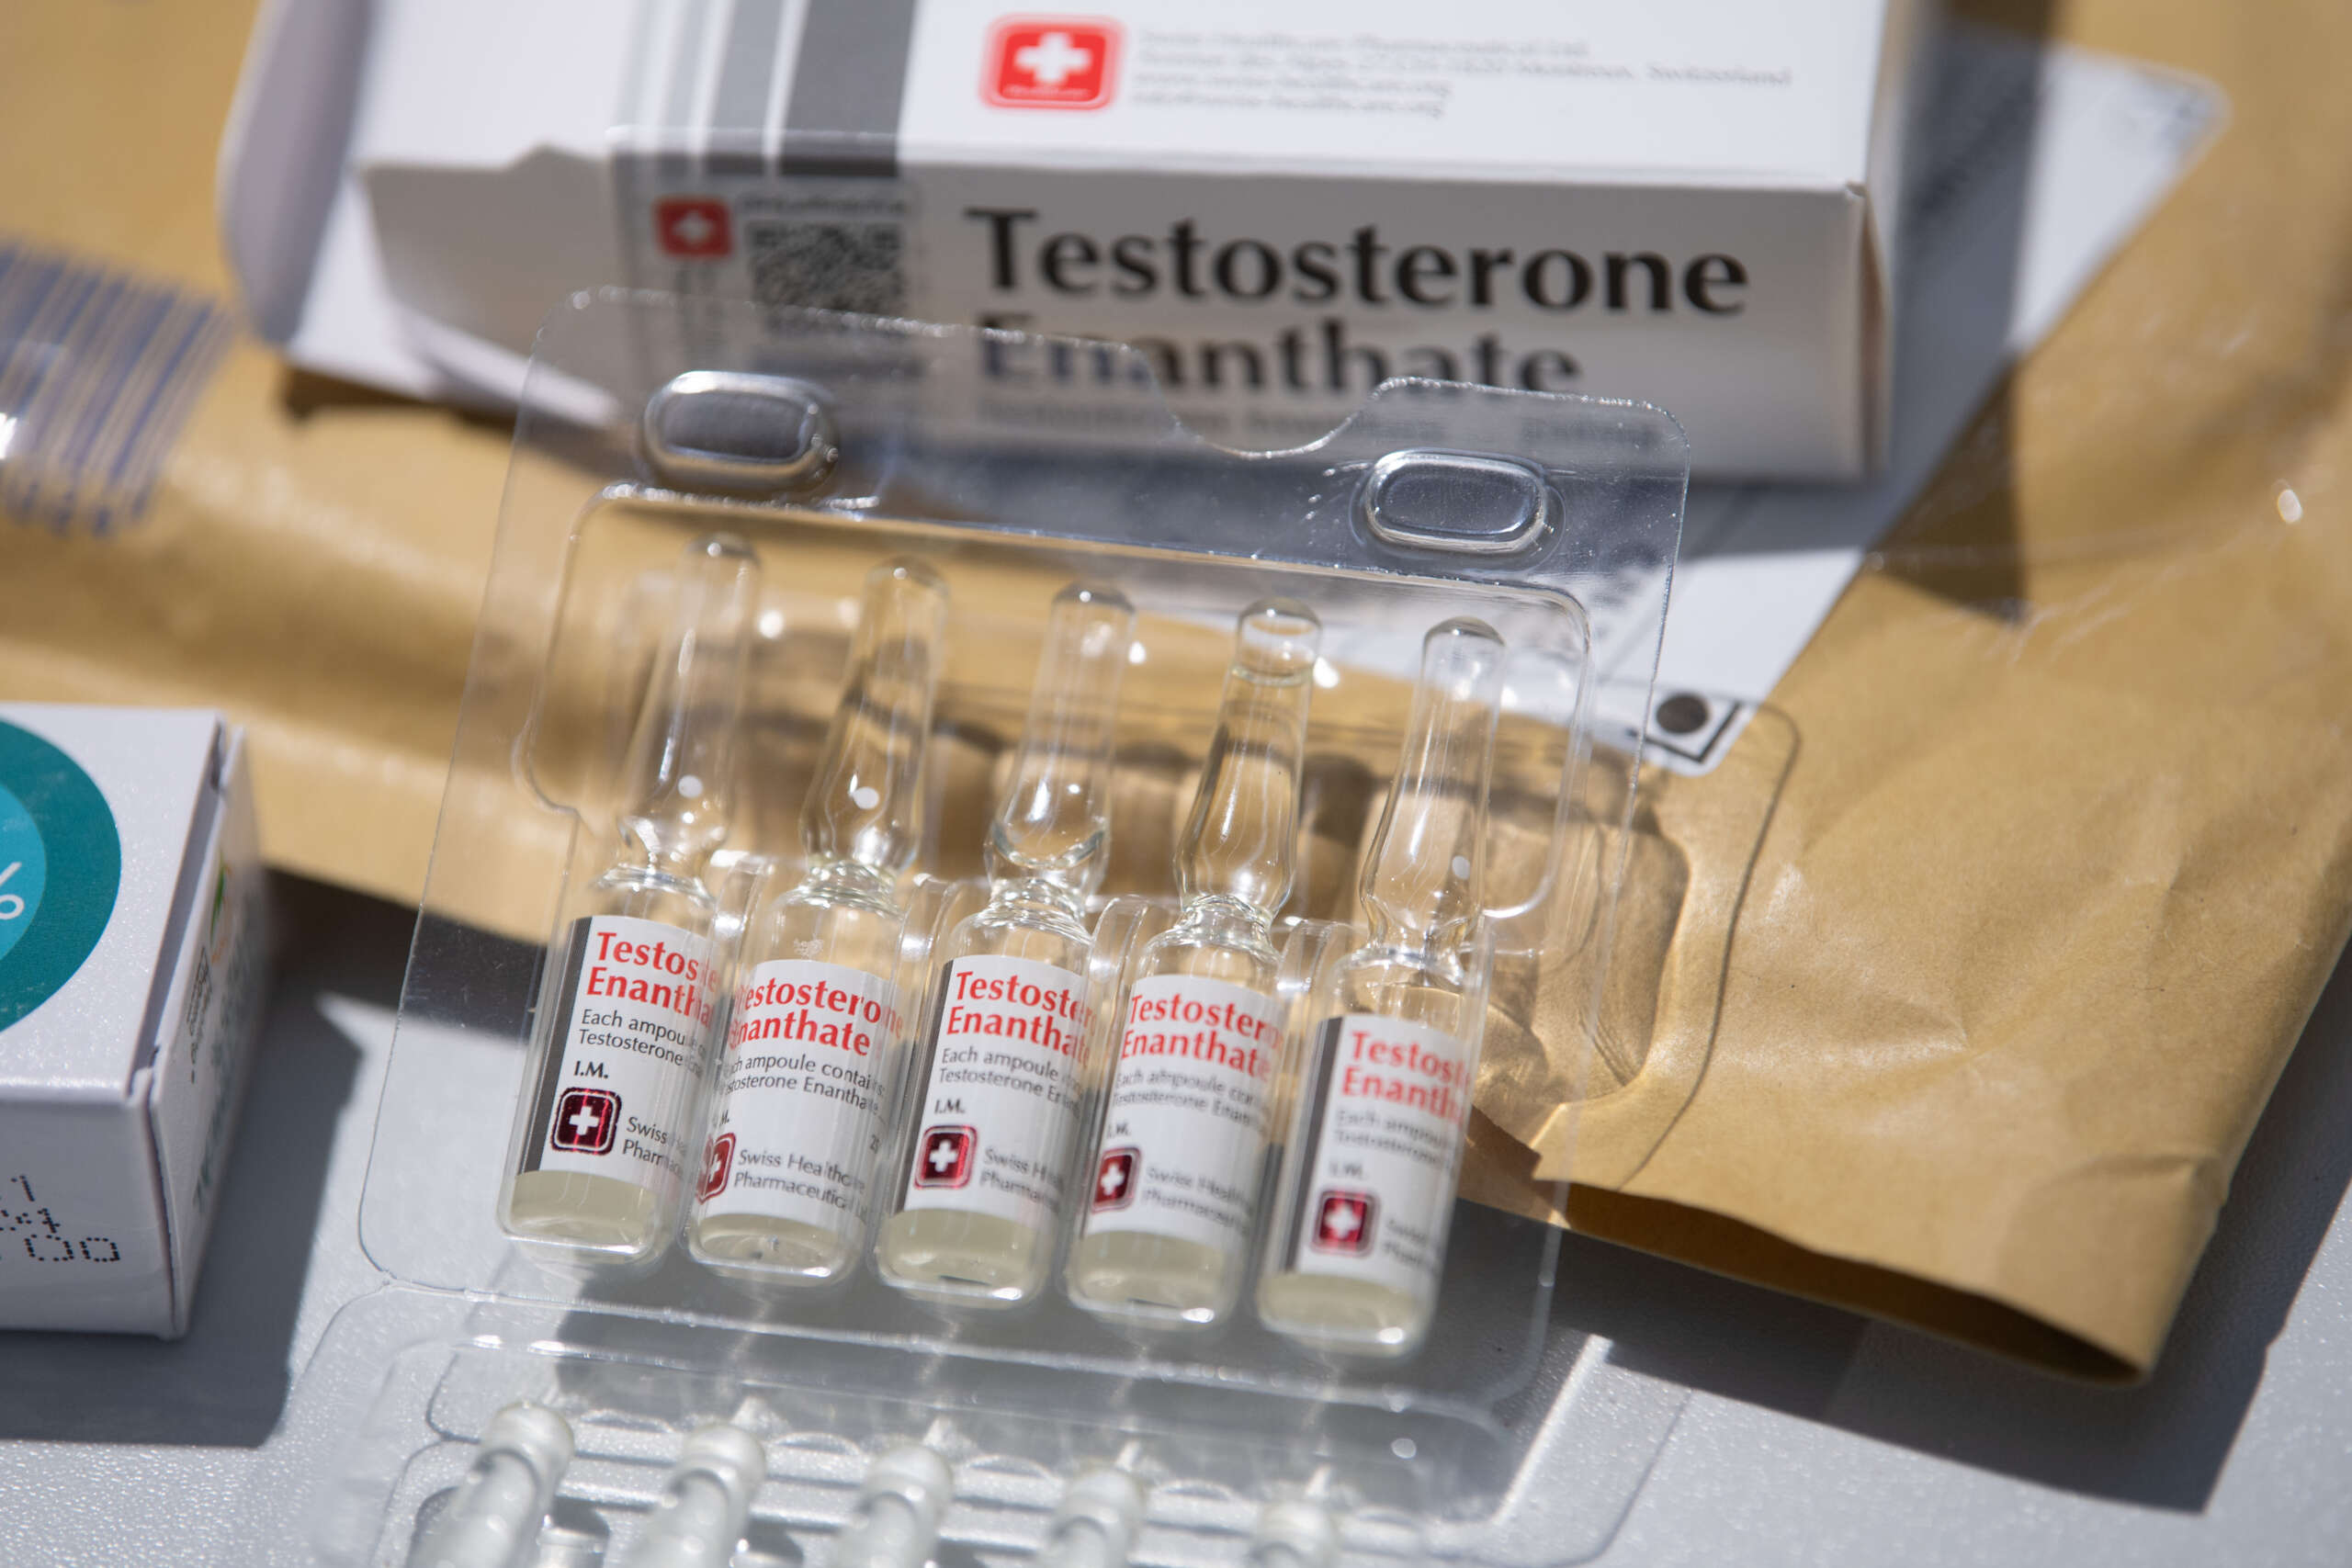 L’accès à la testostérone pourrait être limité à la fin de l’urgence de santé publique liée au COVID-19